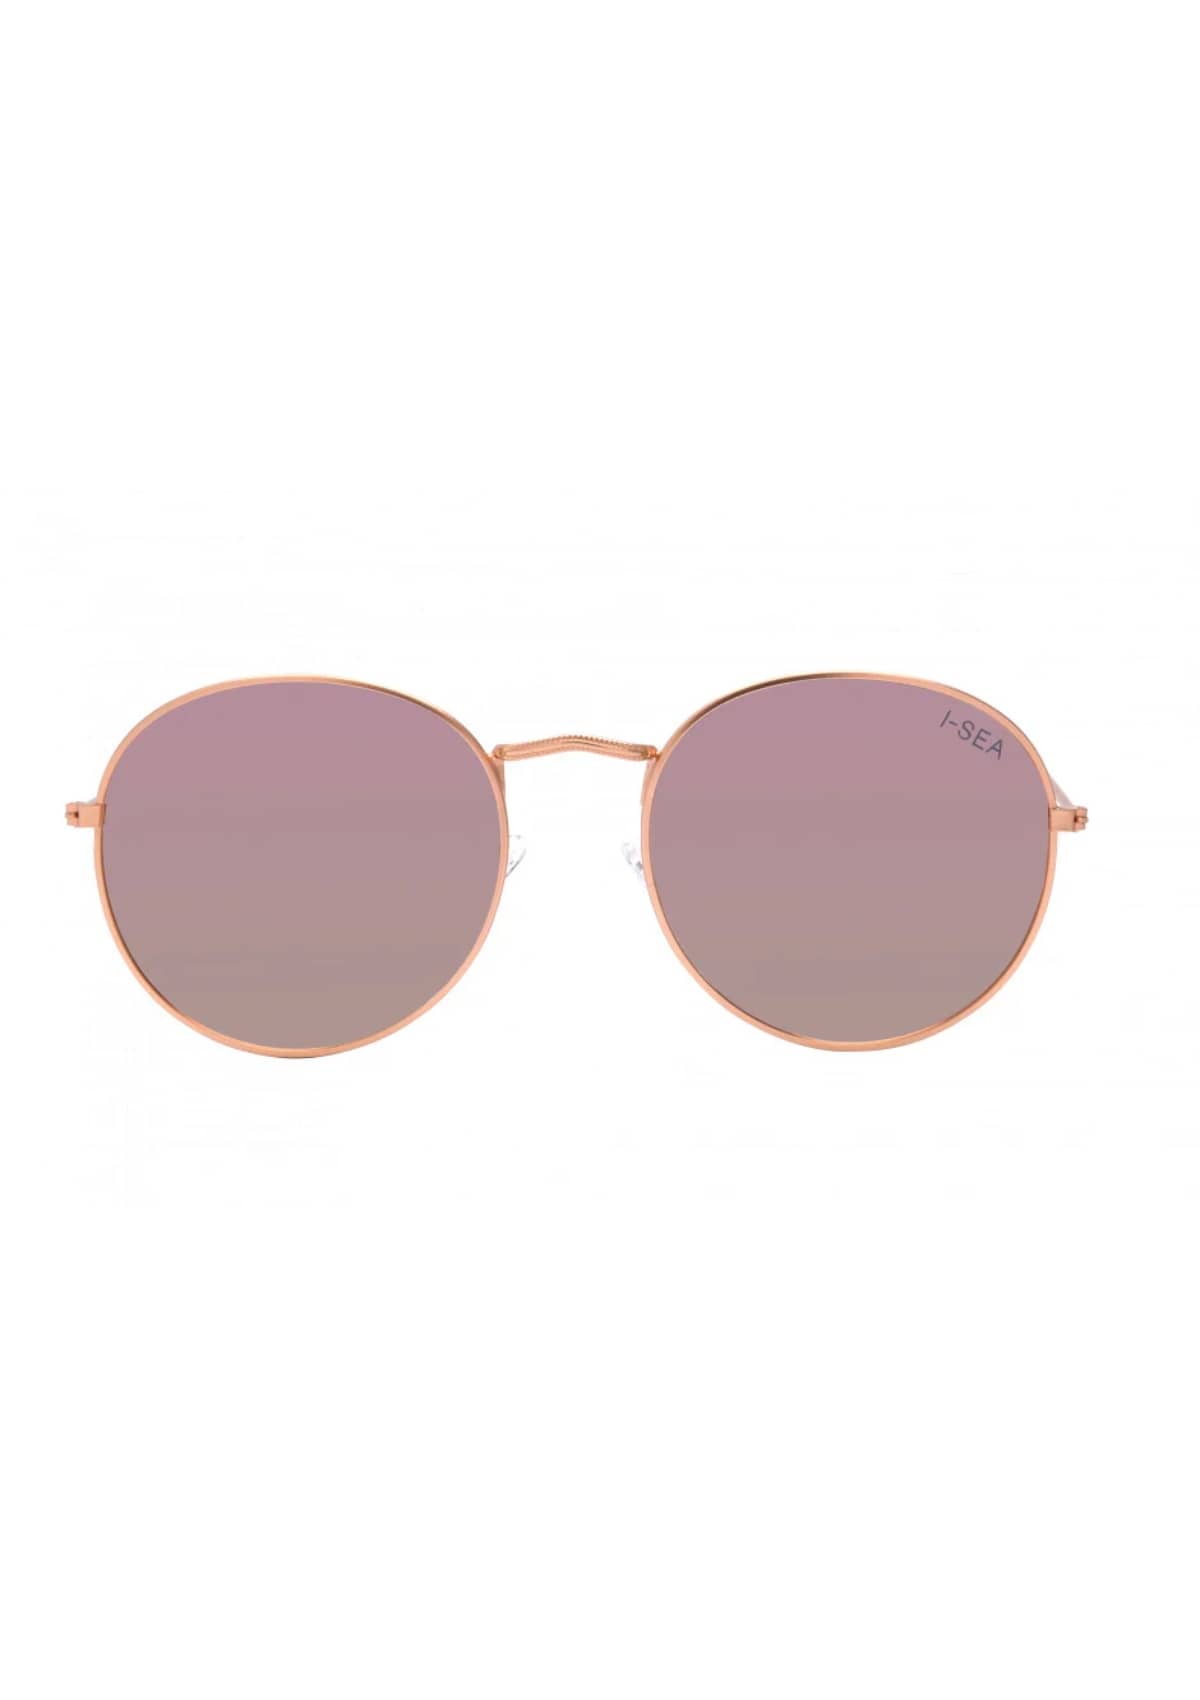 London Polarized Sunglasses - Rose Gold Pink -ISEA- Ruby Jane-